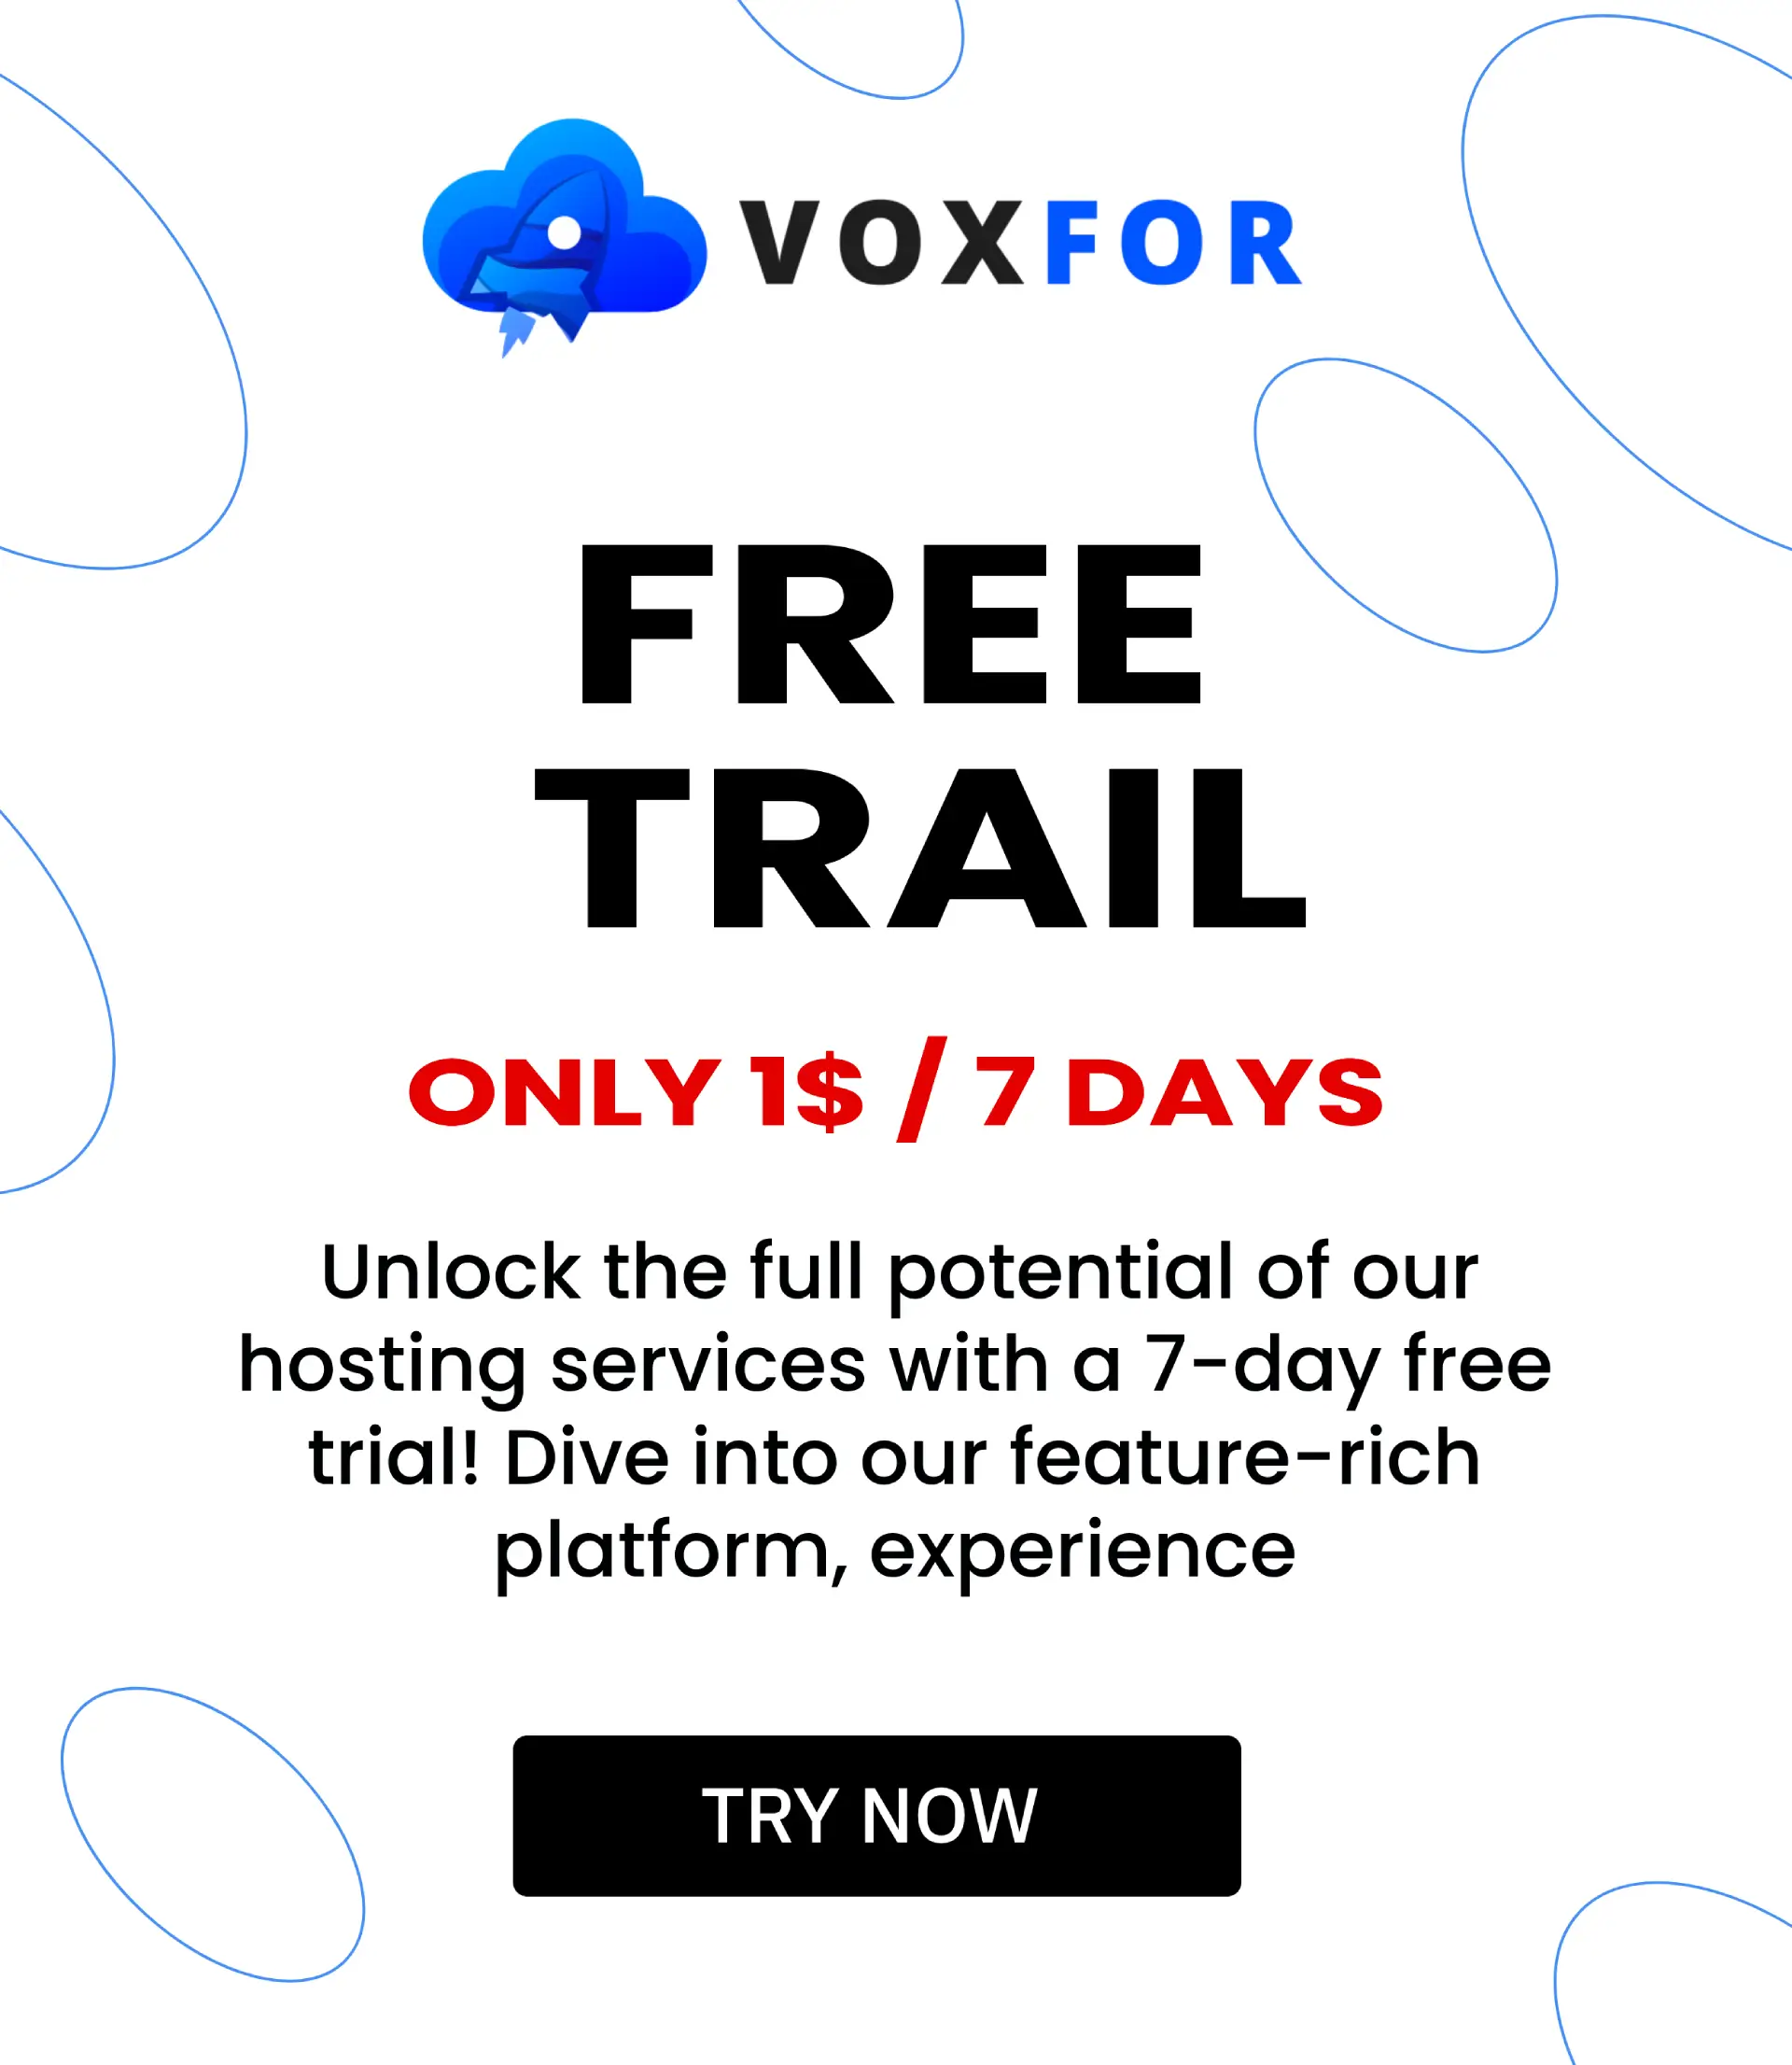 Voxfor Free Trail